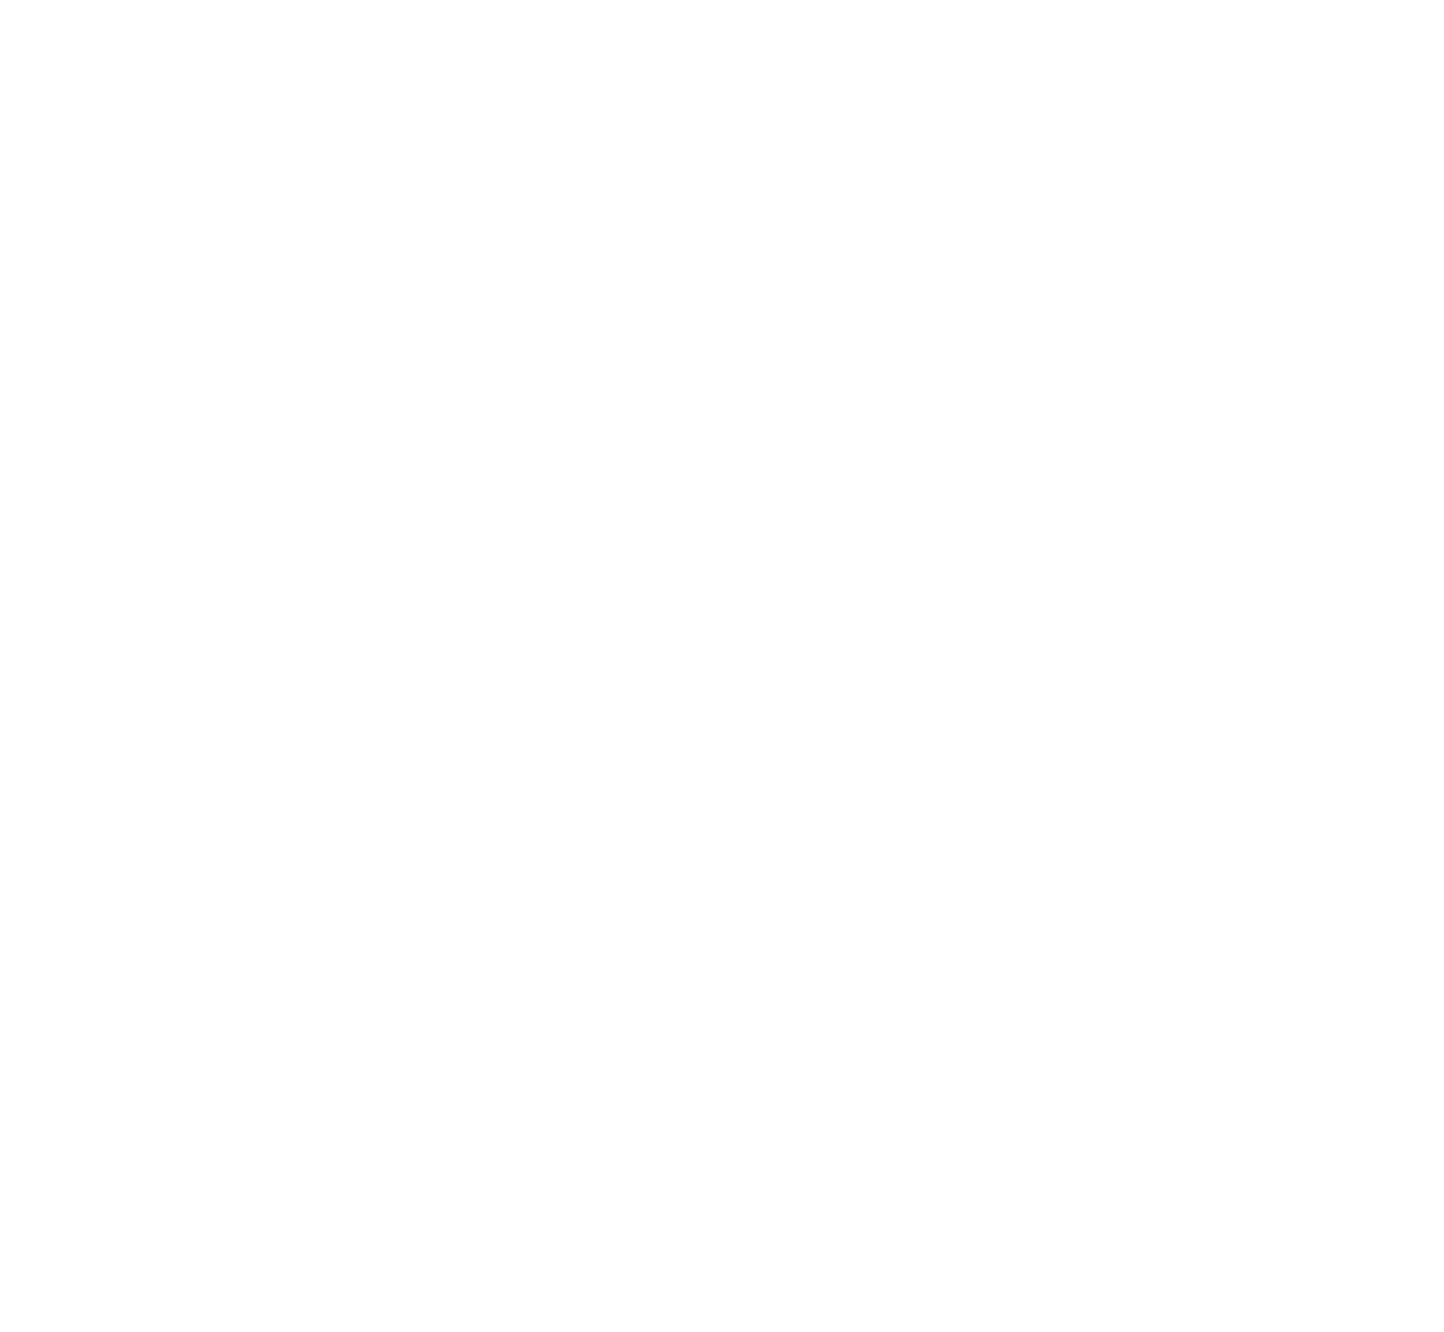 Northwood UWS